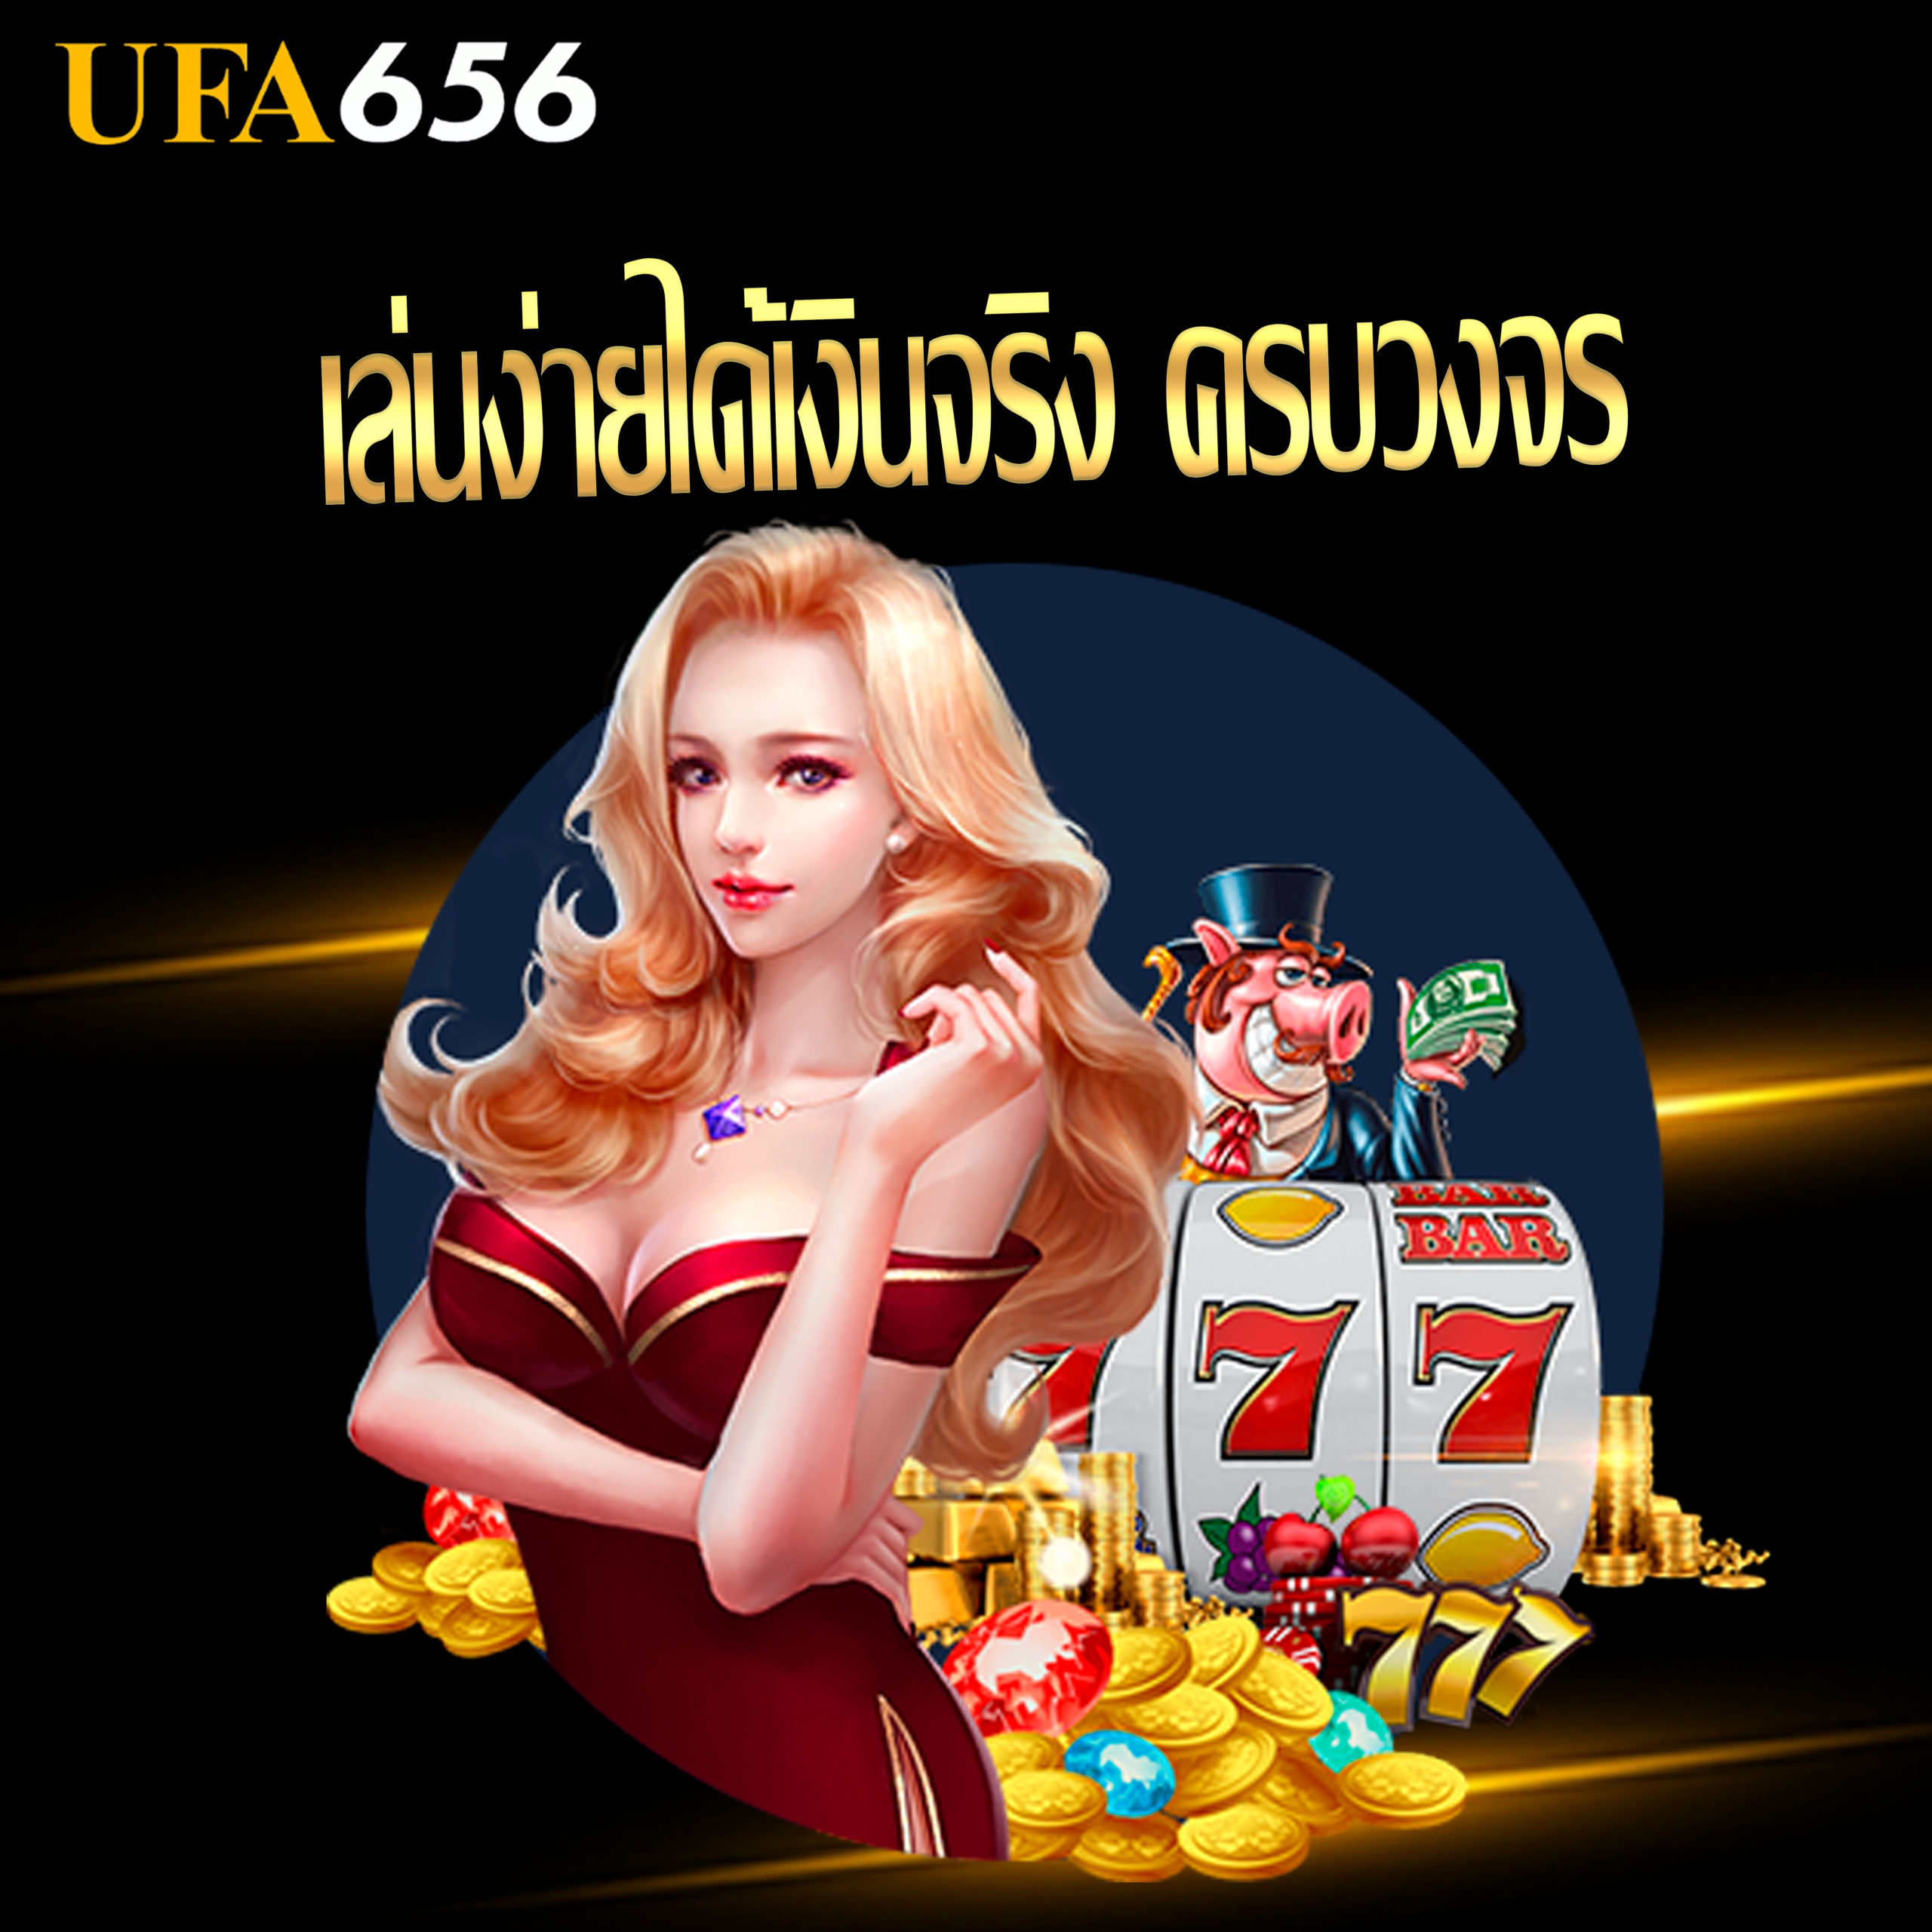 Casino ufa656